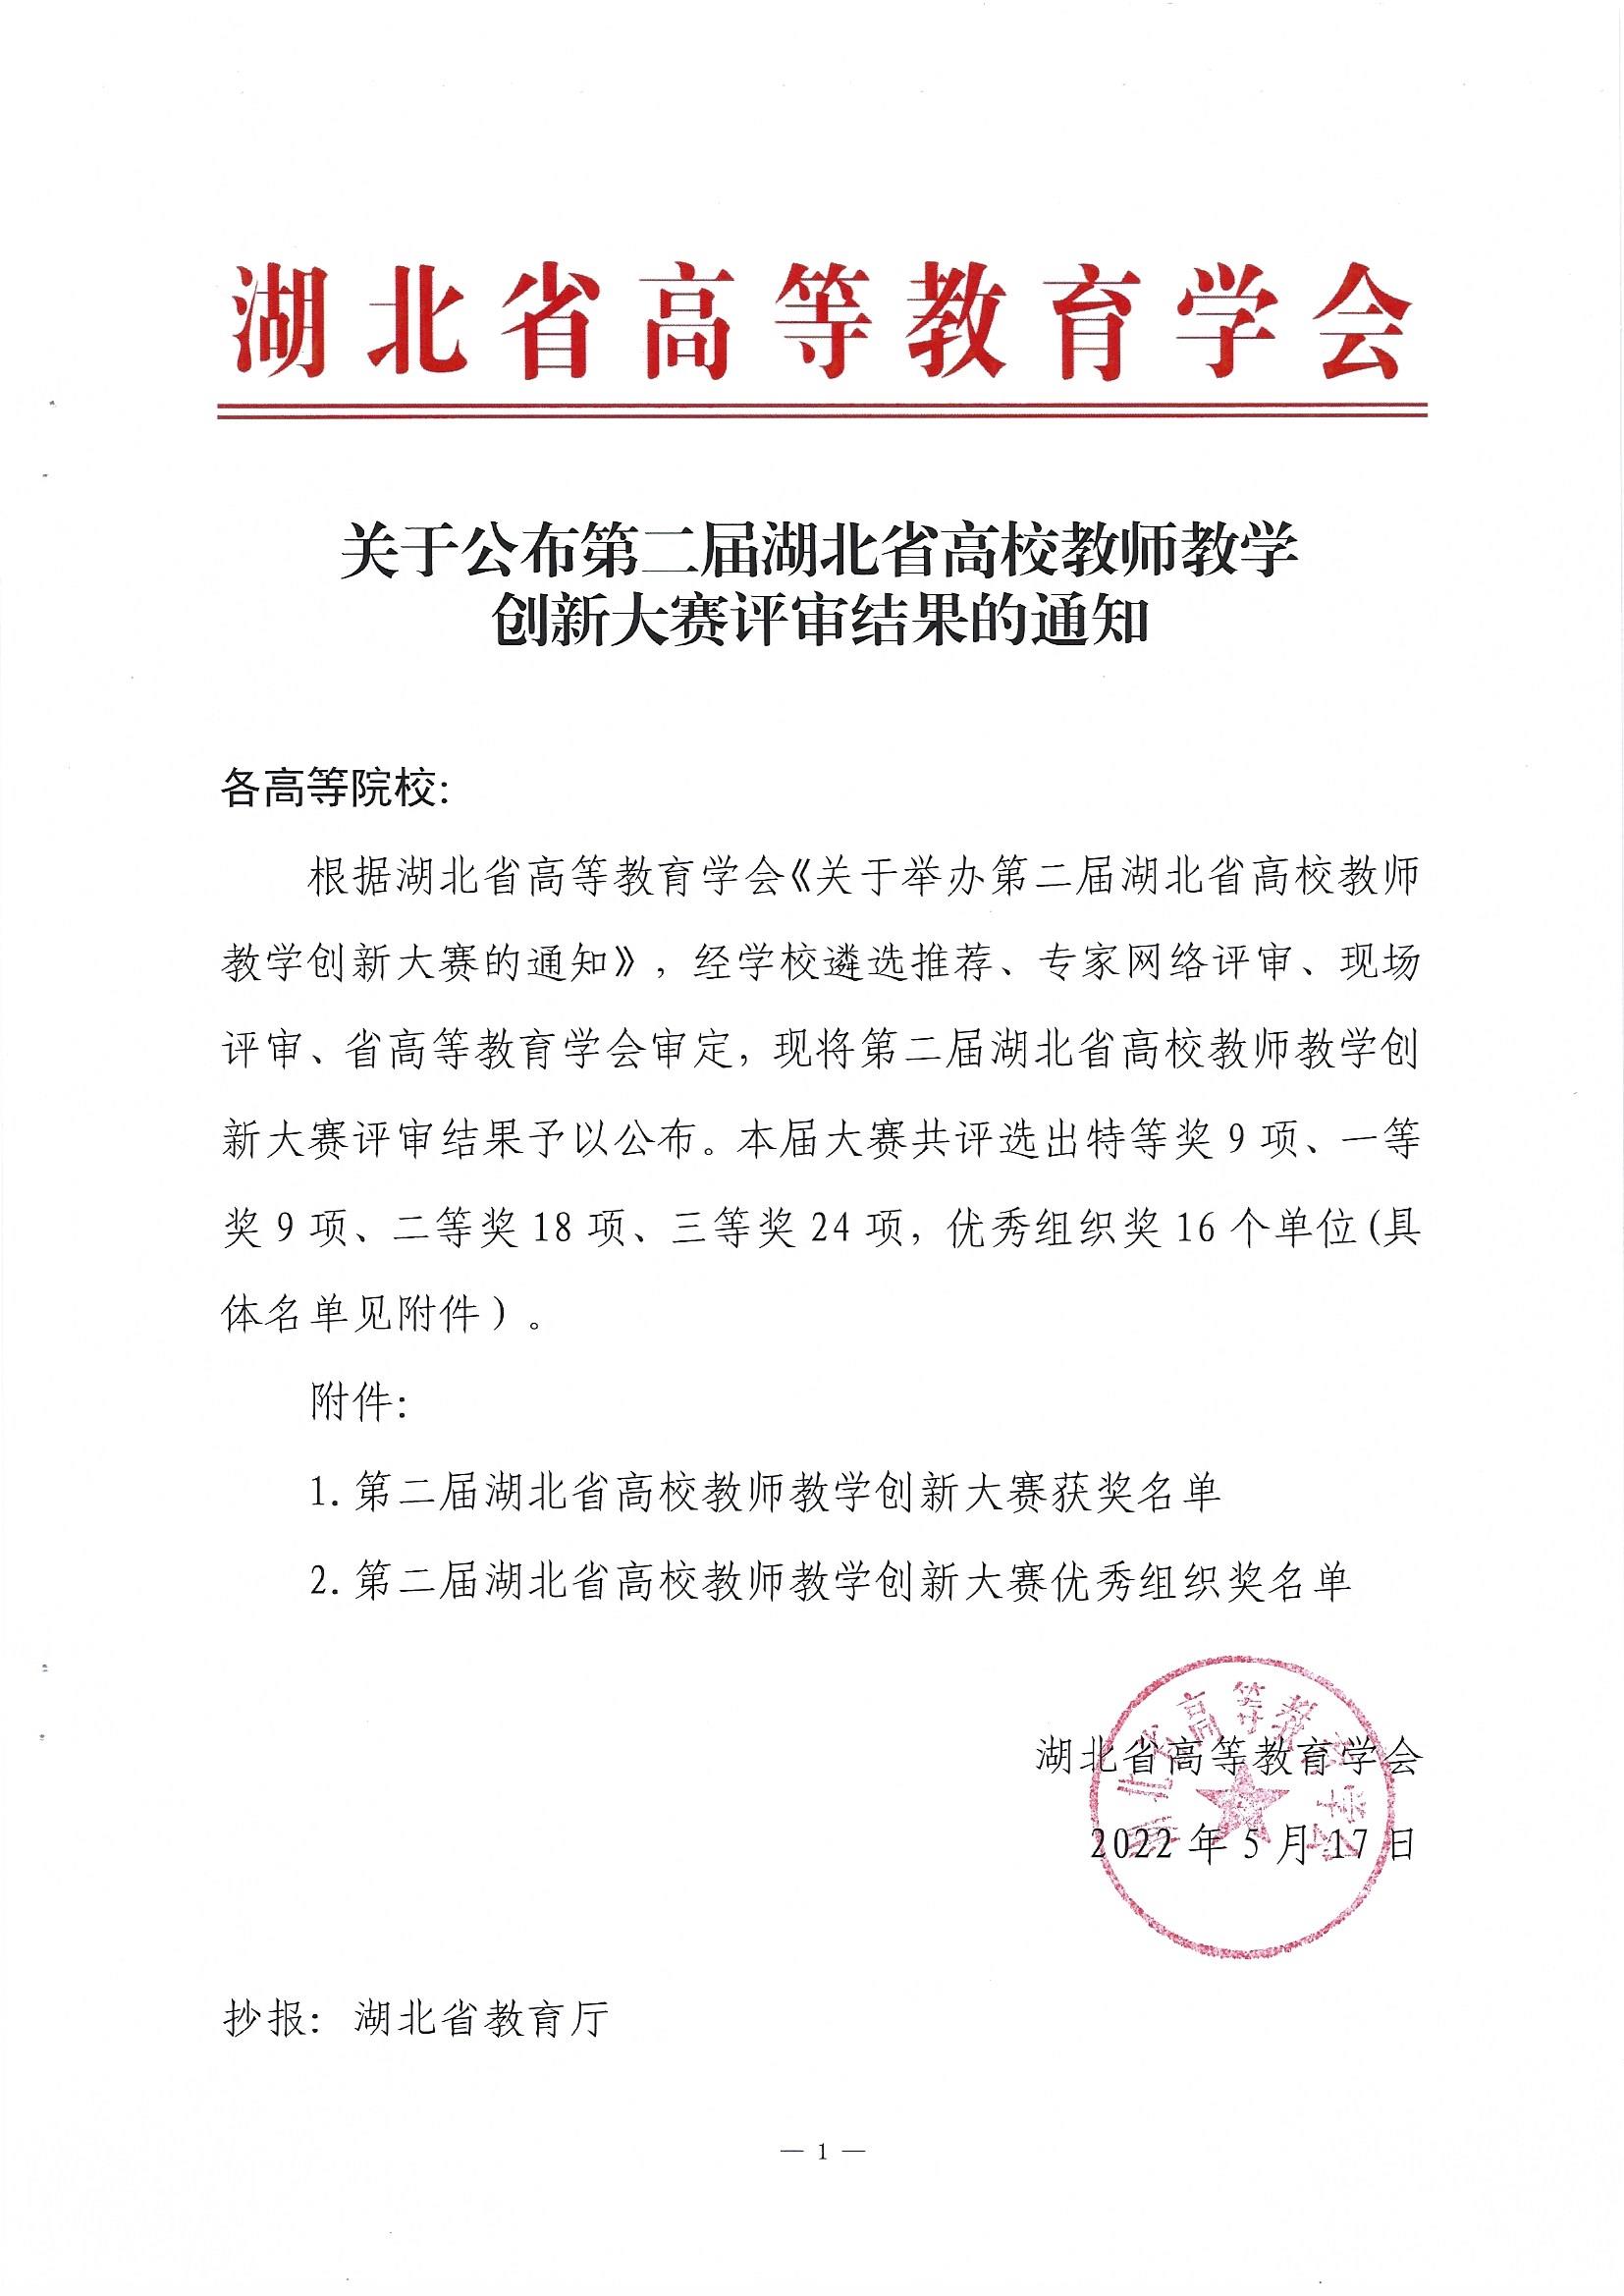 关于公布第二届湖北省高校教师教学创新大赛评审结果的通知(1)_页面_1.jpg